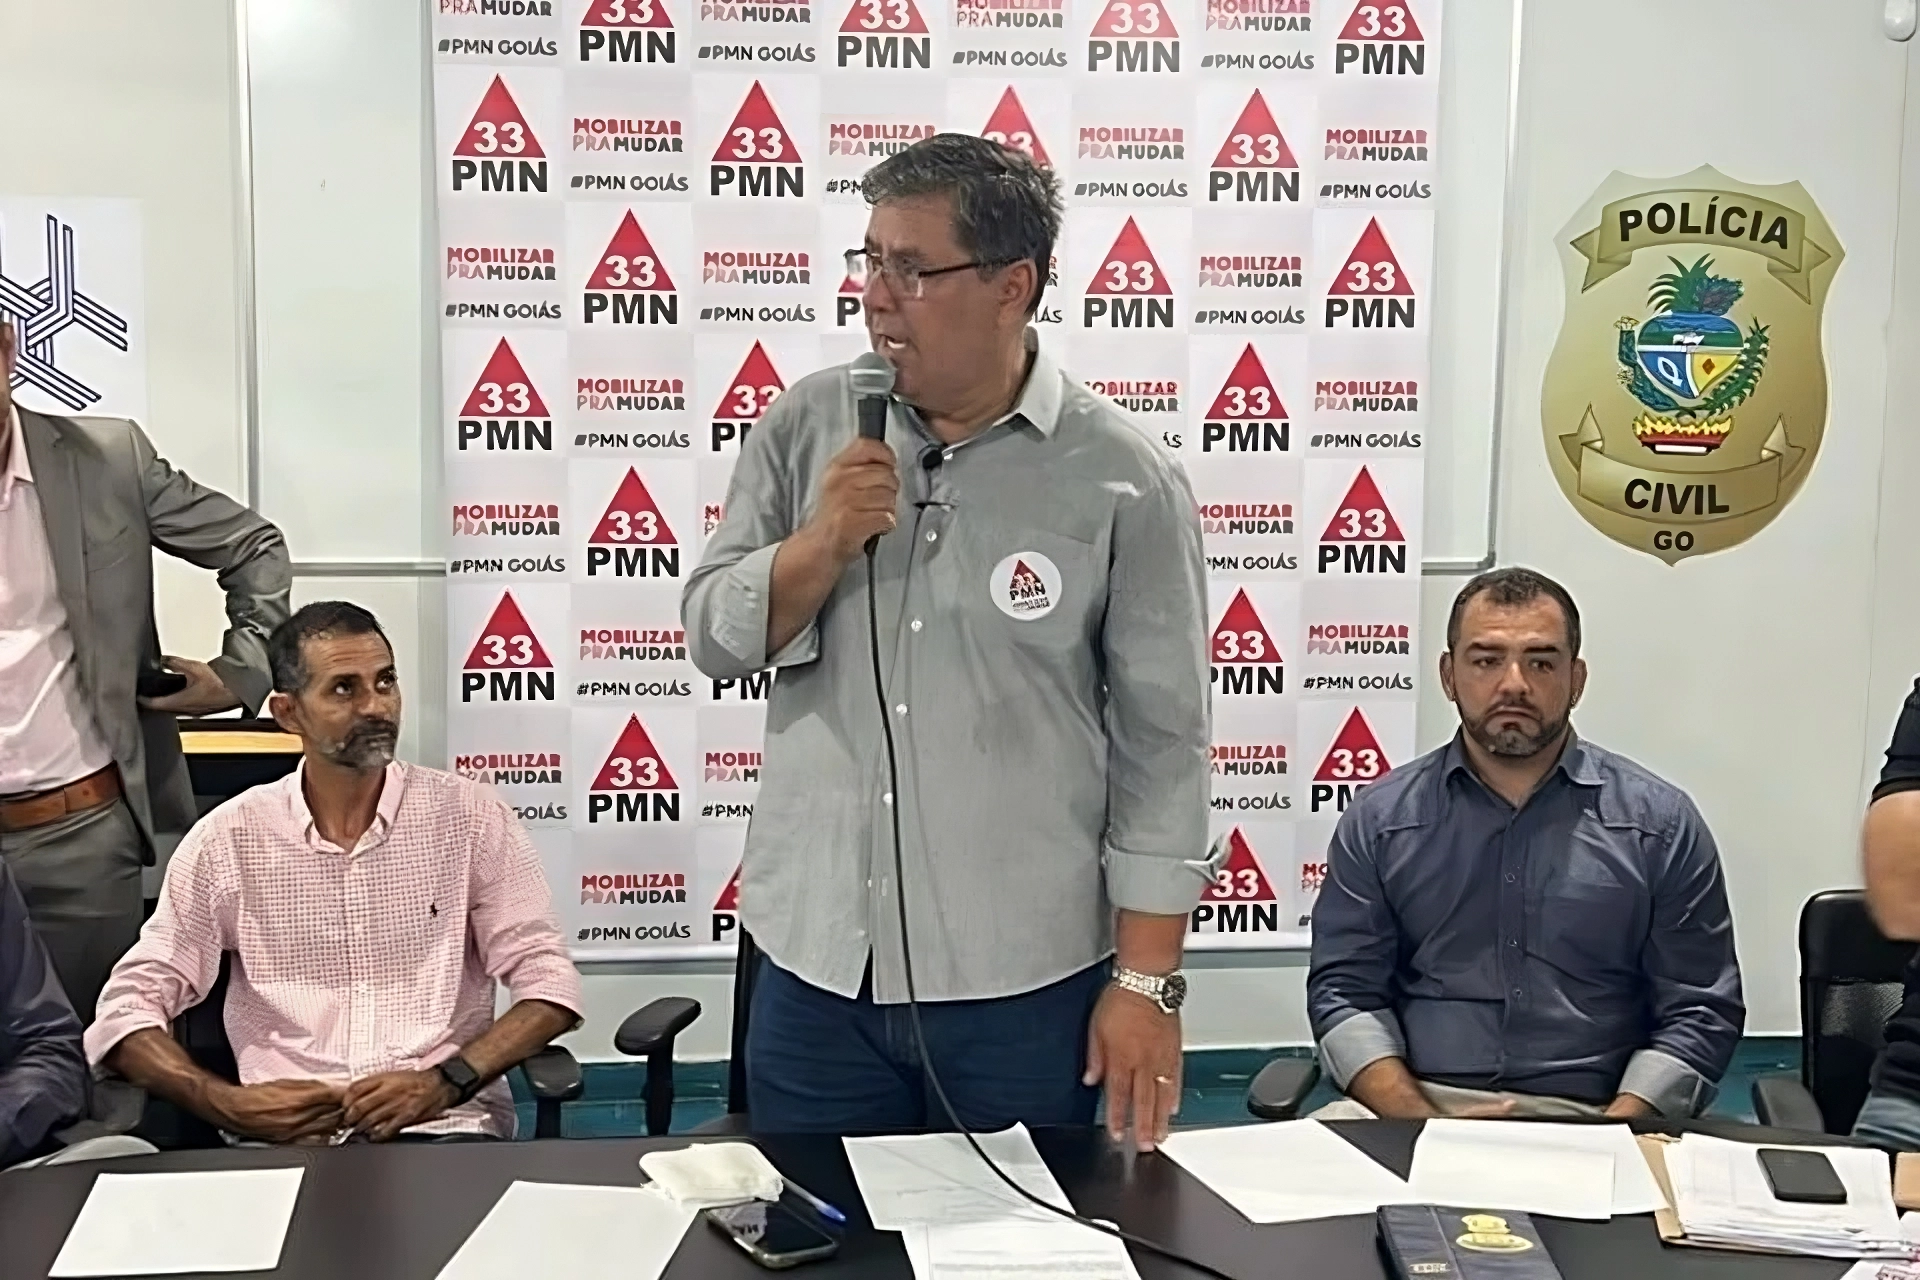 Mobiliza convoca pré-candidatos a vereador em Goiânia para reunião nesta quarta